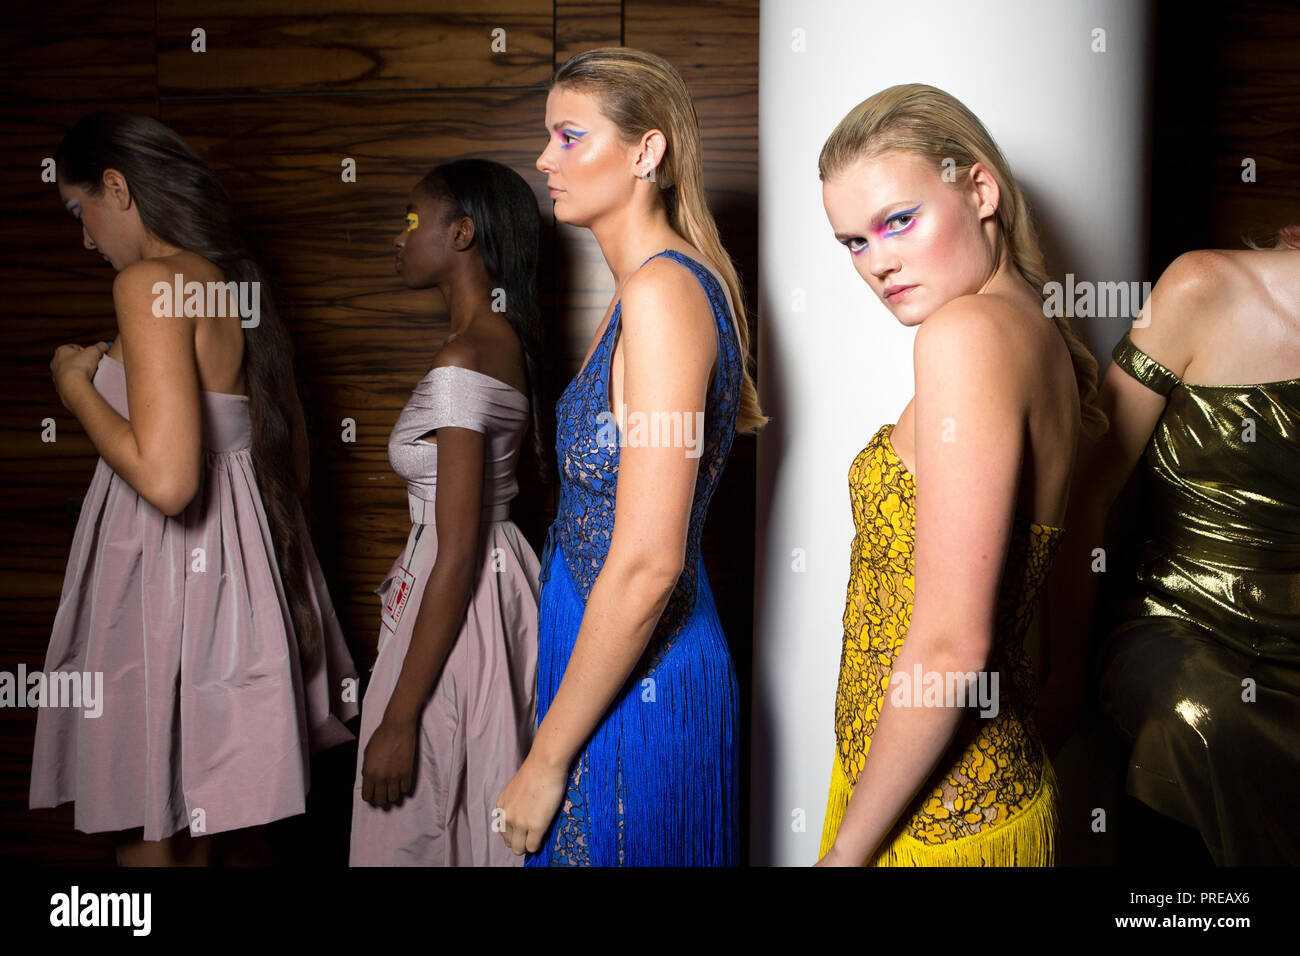 London, UK 16, septembre 2018, les modèles dans les coulisses du show à moi Kolchagov Barba Strand Hotel, London Fashion Week SS/19. Mariusz Goslicki/Alamy Banque D'Images